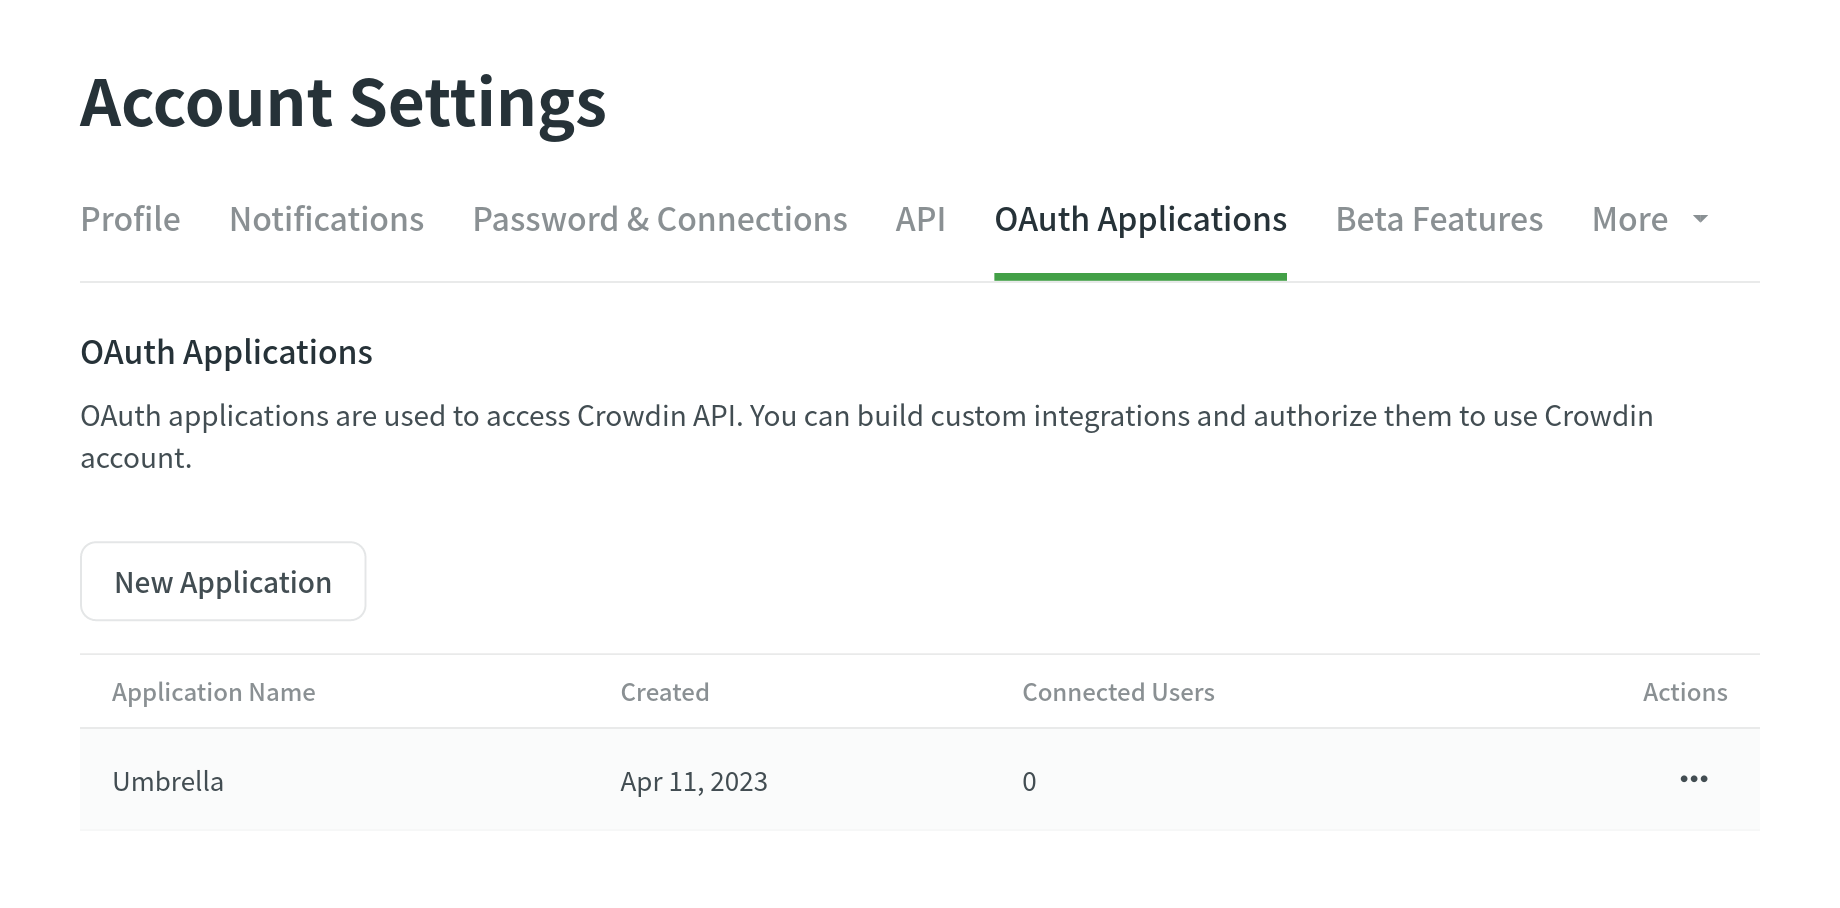 Scheda delle Applicazioni OAuth